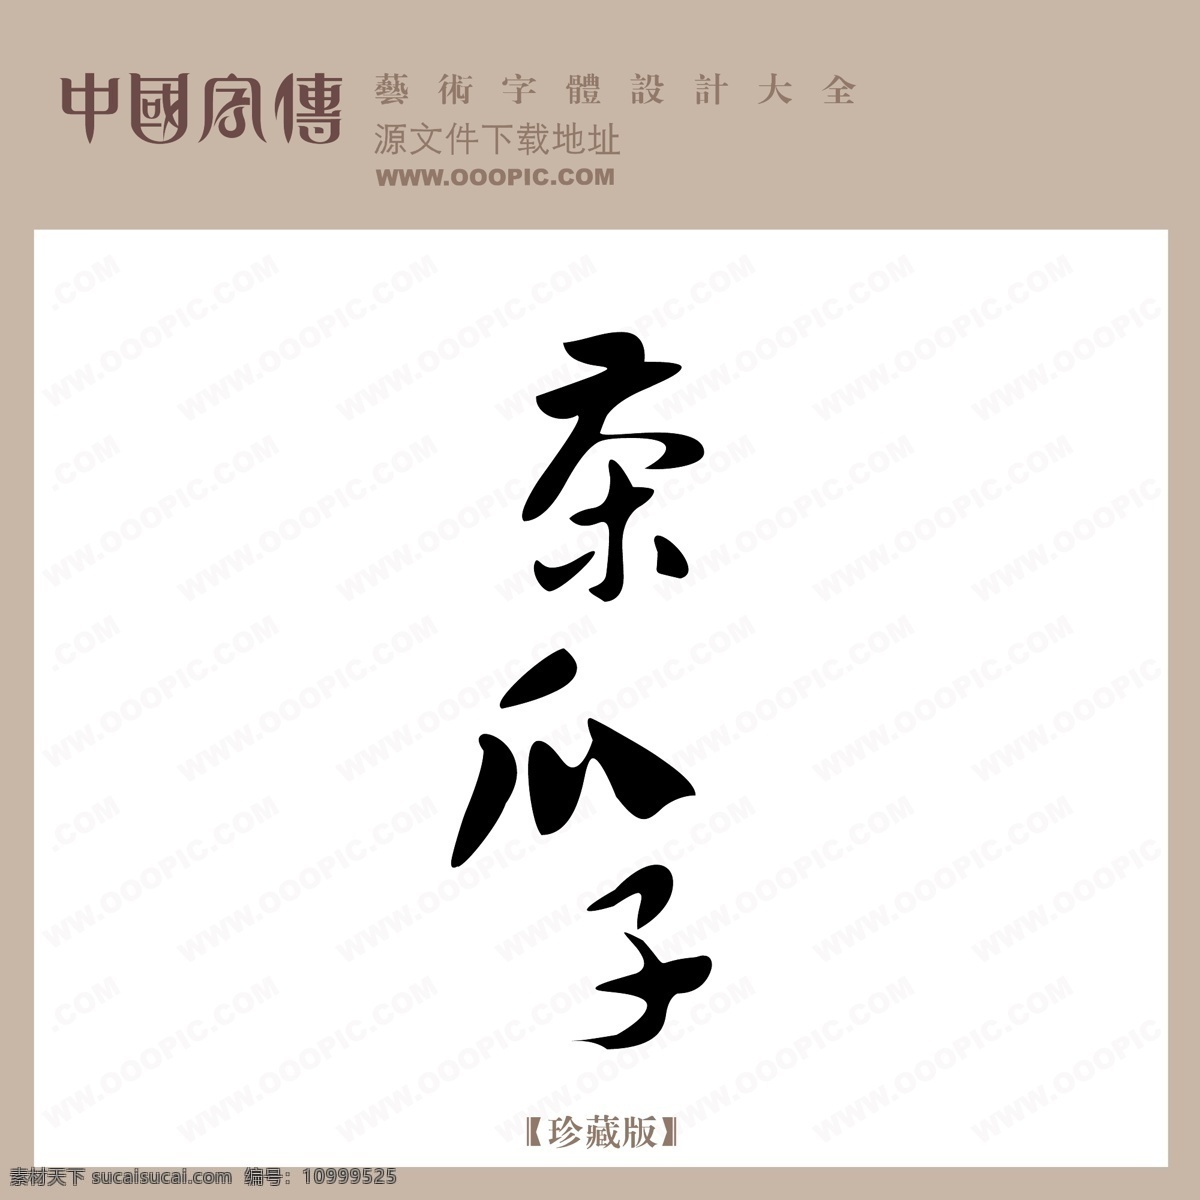 茶 瓜子 中文 现代艺术 字 创意 美工 艺术 中国字体下载 茶瓜子 矢量图